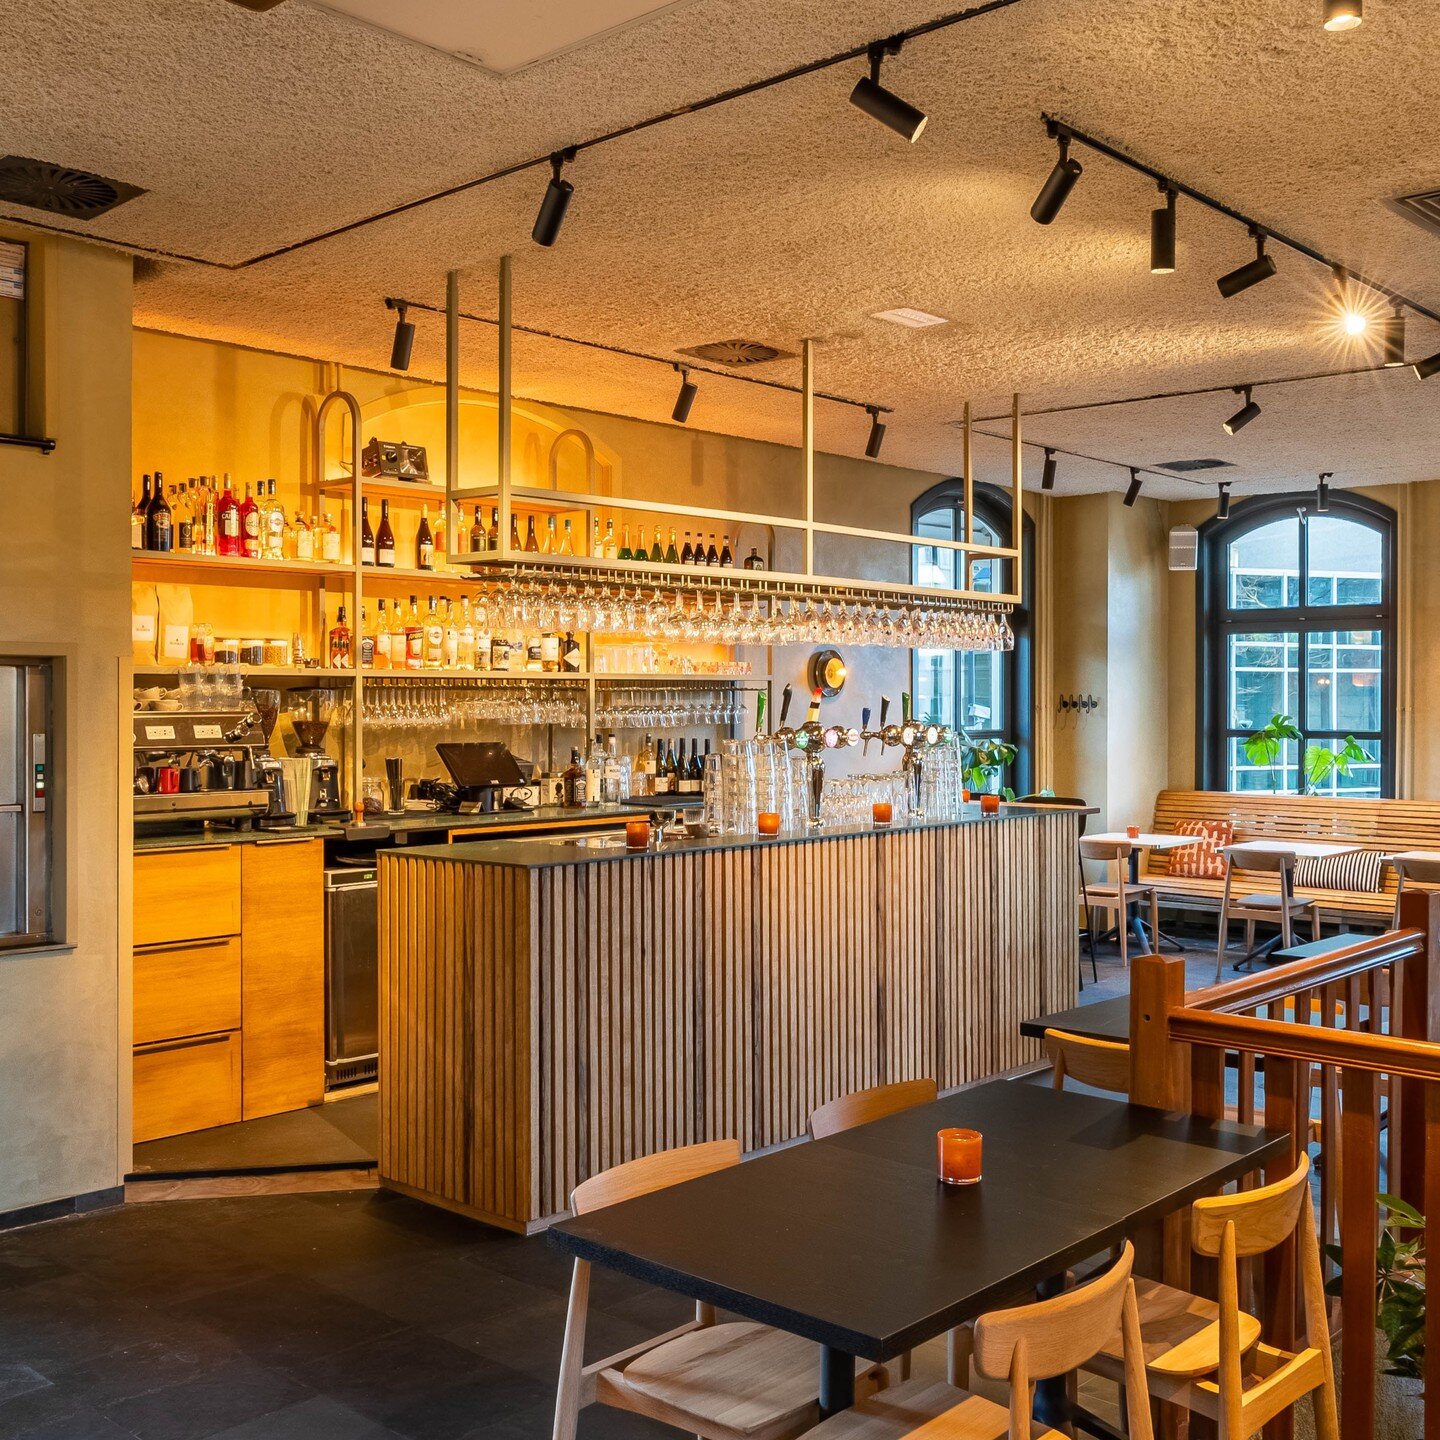 ✨Horeca barframes ✨
Onlangs verbouwde Caf&eacute; Restaurant Blooker grondig. Een compleet nieuw interieur waar wij oa bar voorzien hebben van nieuwe barframes. Deze barrekken zijn voorzien van op maat gemaakte glazenhouders en LED verlichting. Zo we